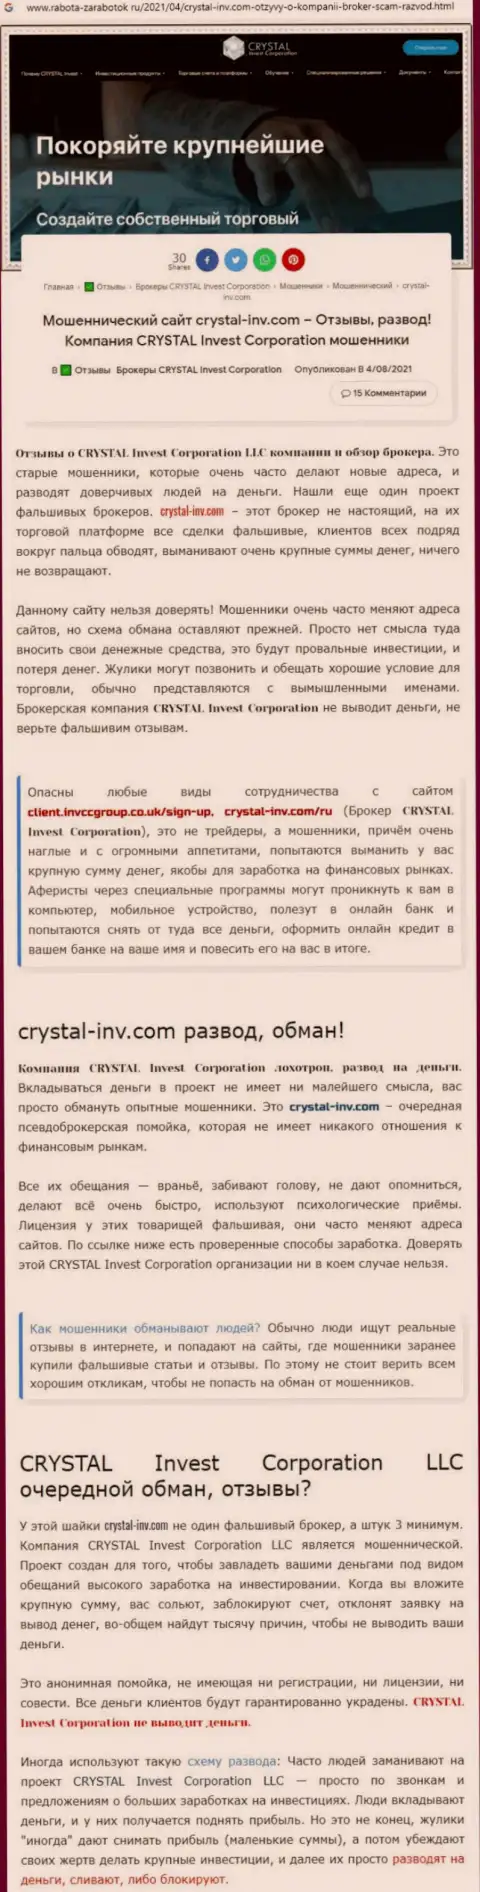 Материал, разоблачающий организацию Crystal Invest, позаимствованный с сайта с обзорами разных организаций